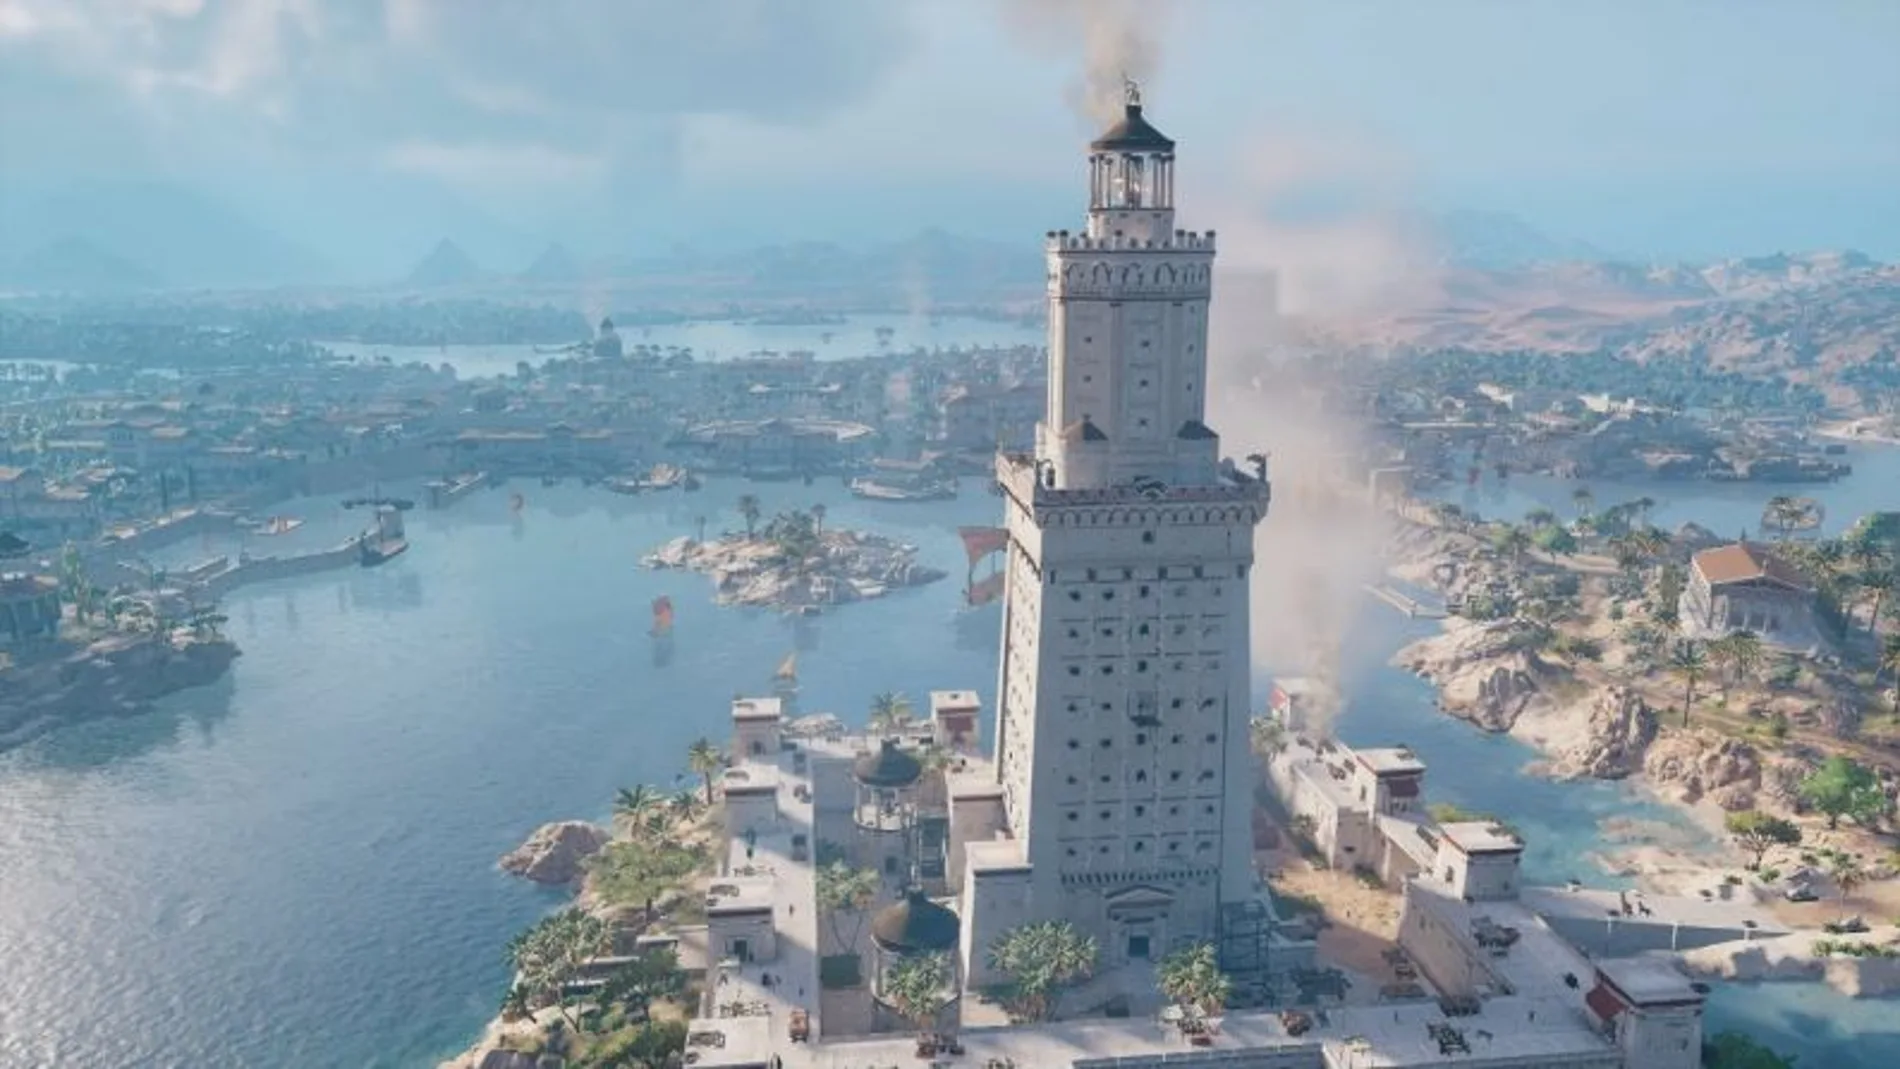 Recreación del Faro de Alejandía en el videojuego Assasins Creed, uno de las sagas más exitosas de Ubisoft.